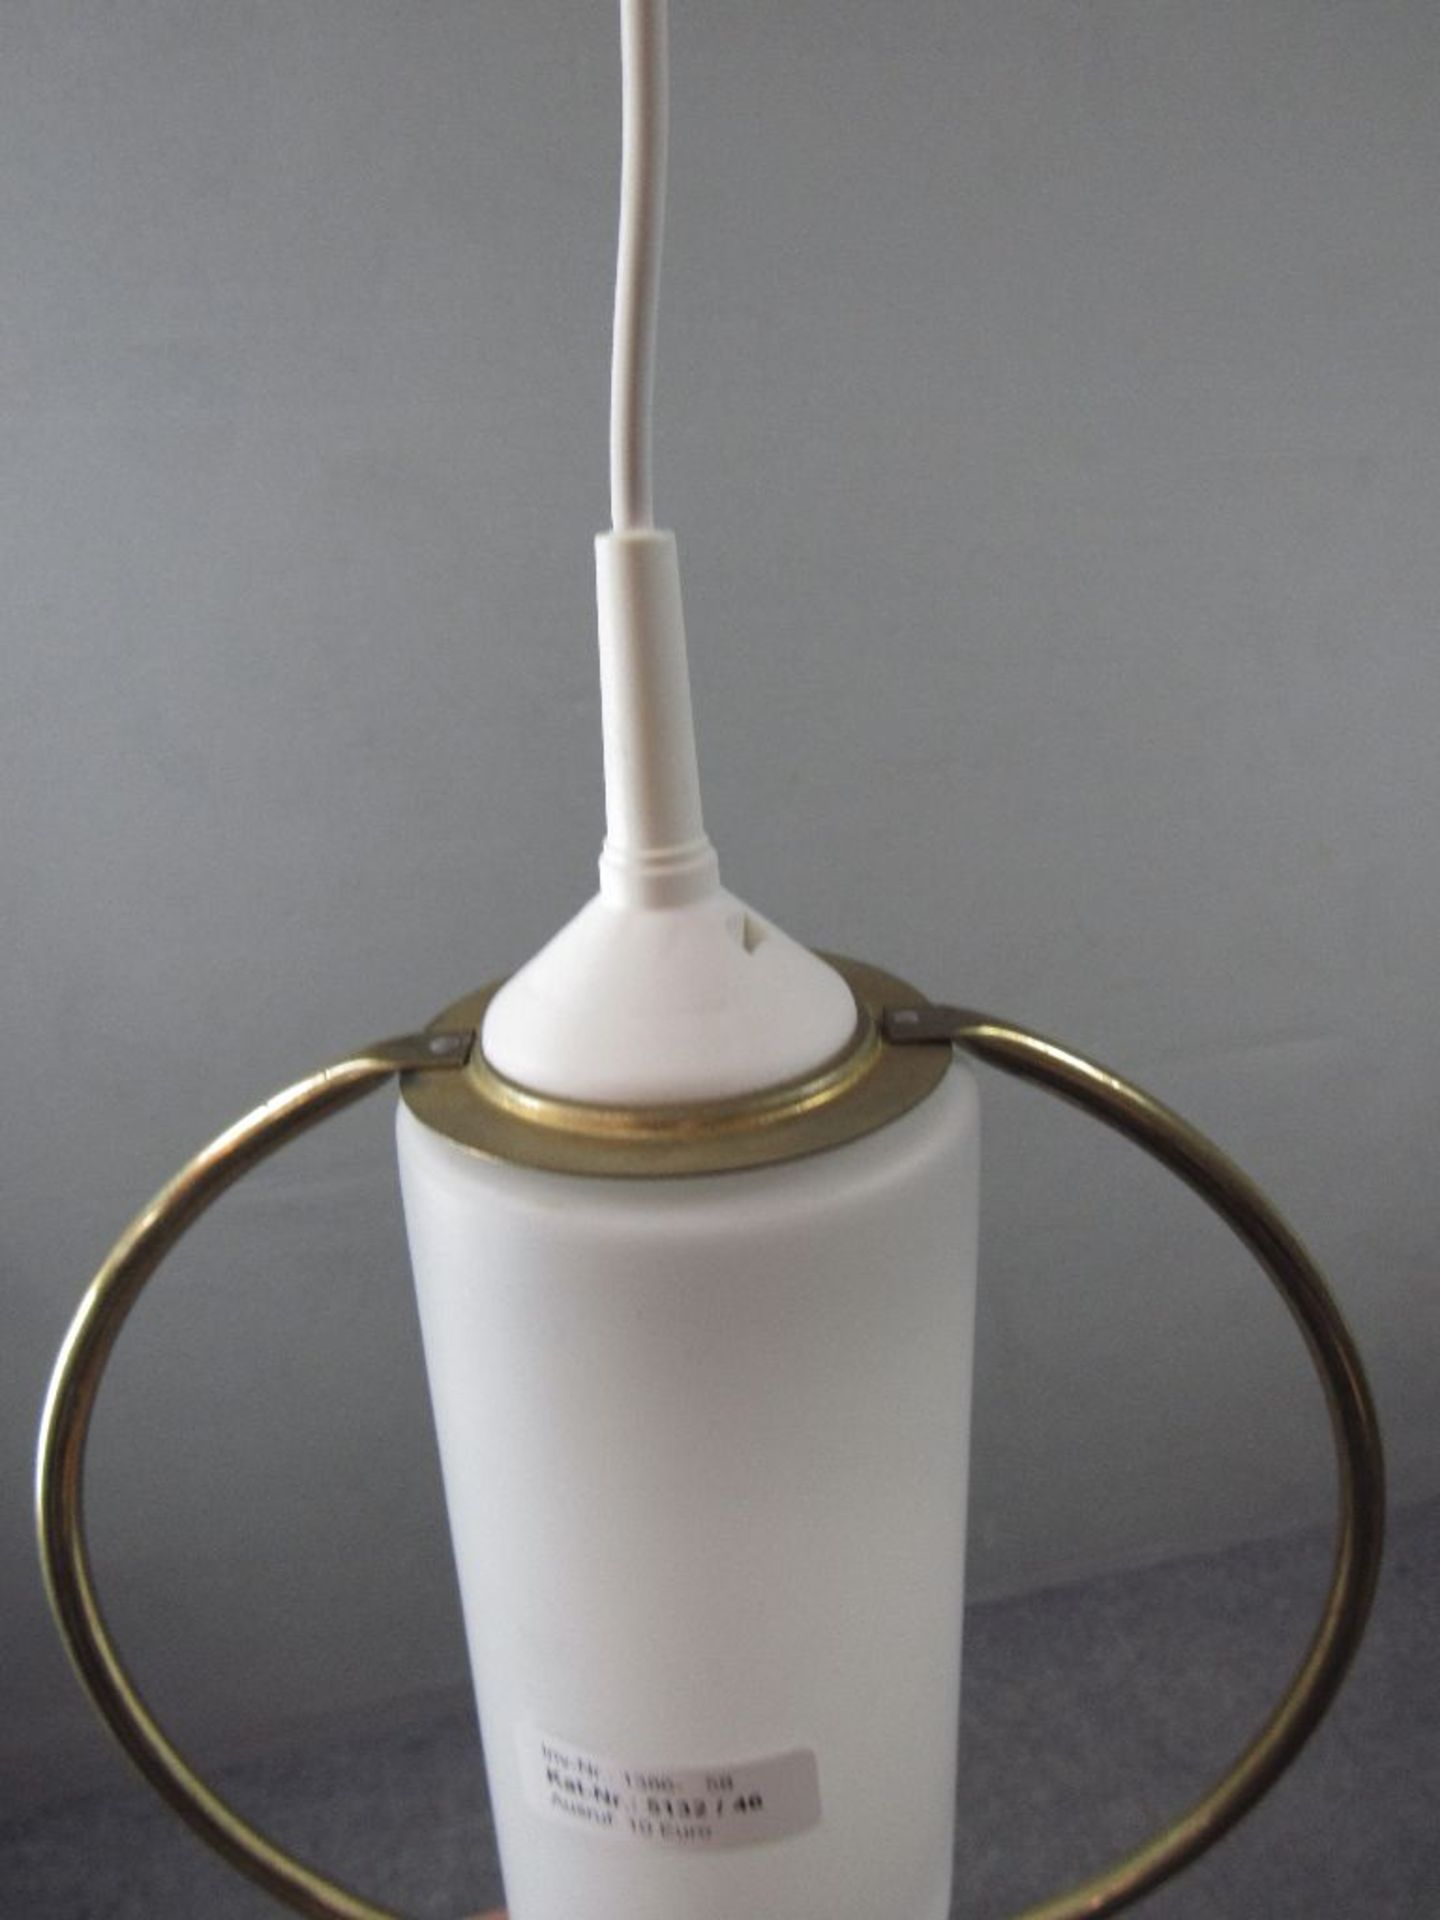 Deckenlampe in Art Deco neu elektrifiziert 32cm hoch - Image 3 of 3